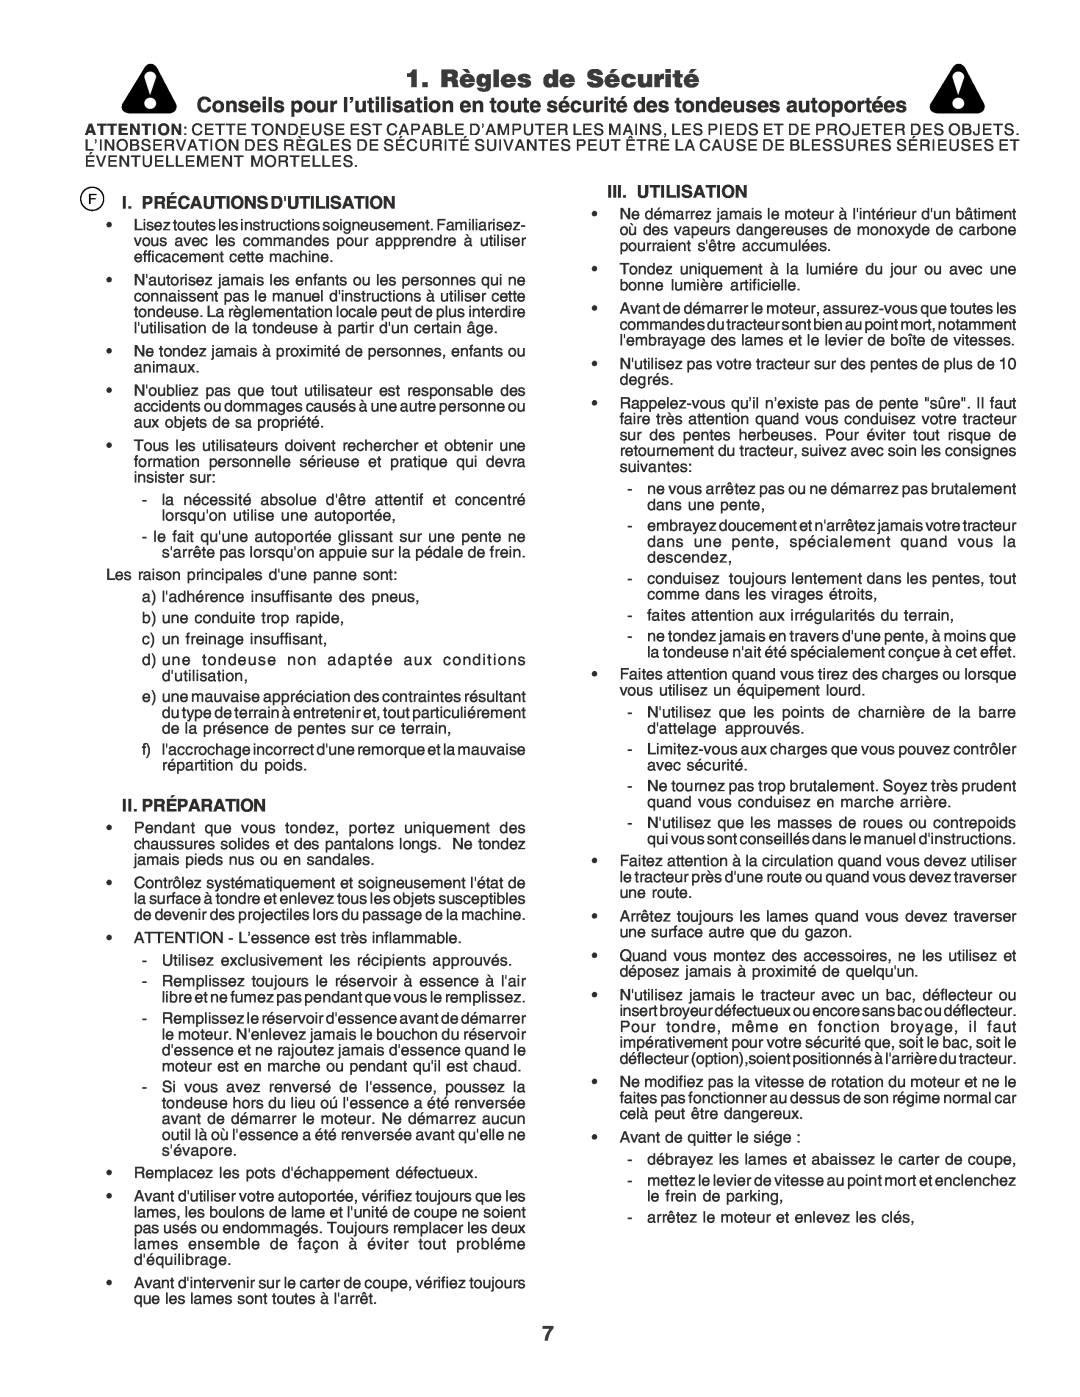 Husqvarna YT155 instruction manual 1. Règles de Sécurité, F I. Précautions Dutilisation, Ii. Préparation, Iii. Utilisation 